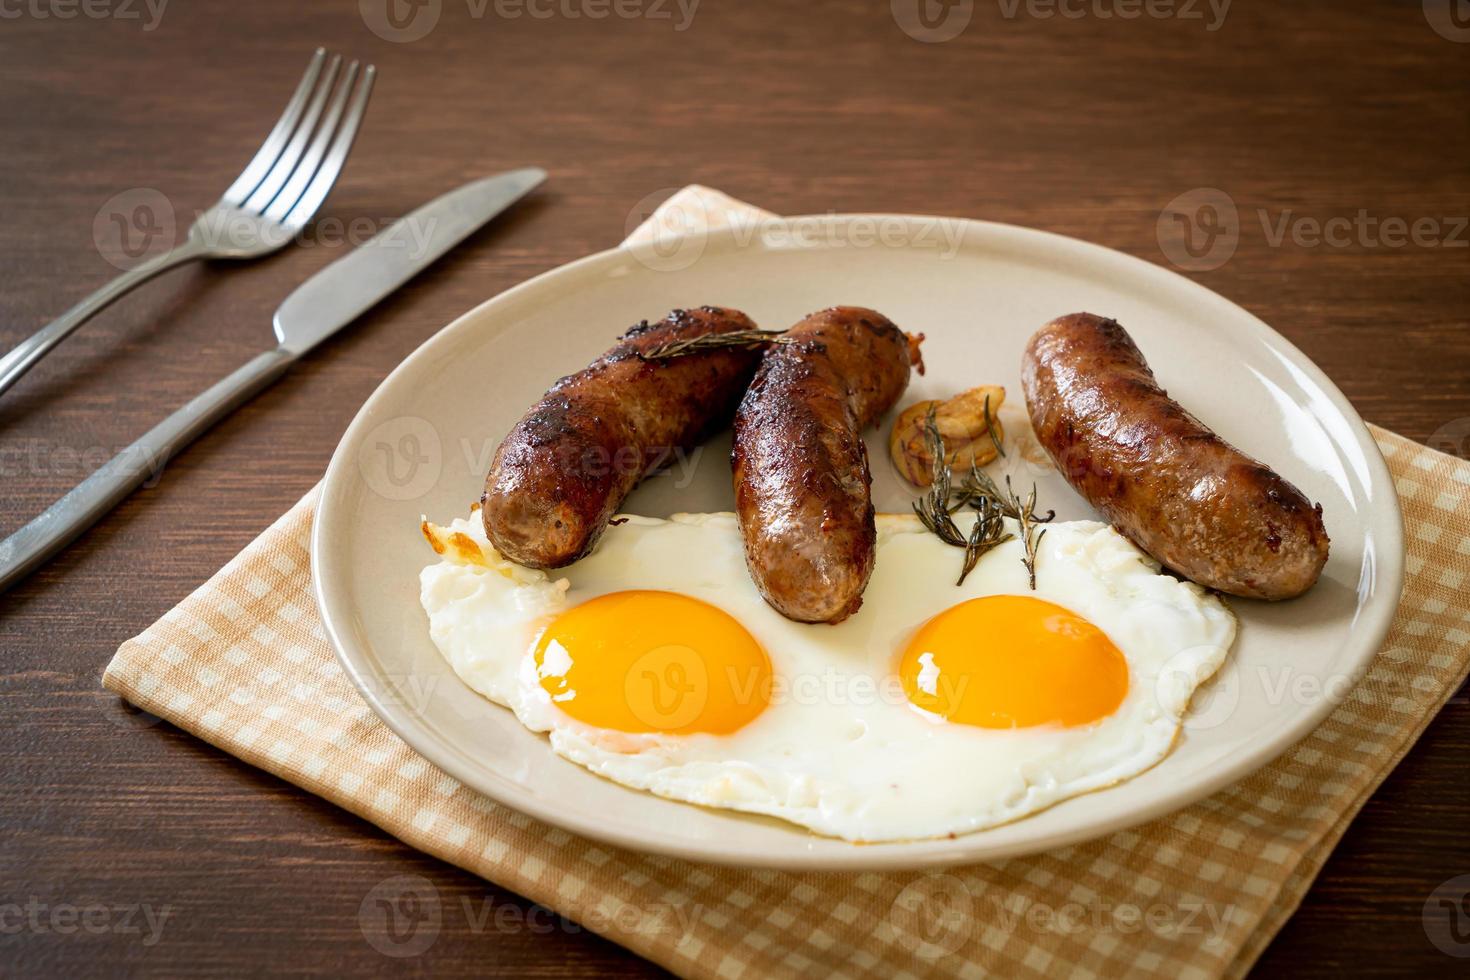 Doble huevo frito casero con salchicha de cerdo frita - para el desayuno foto